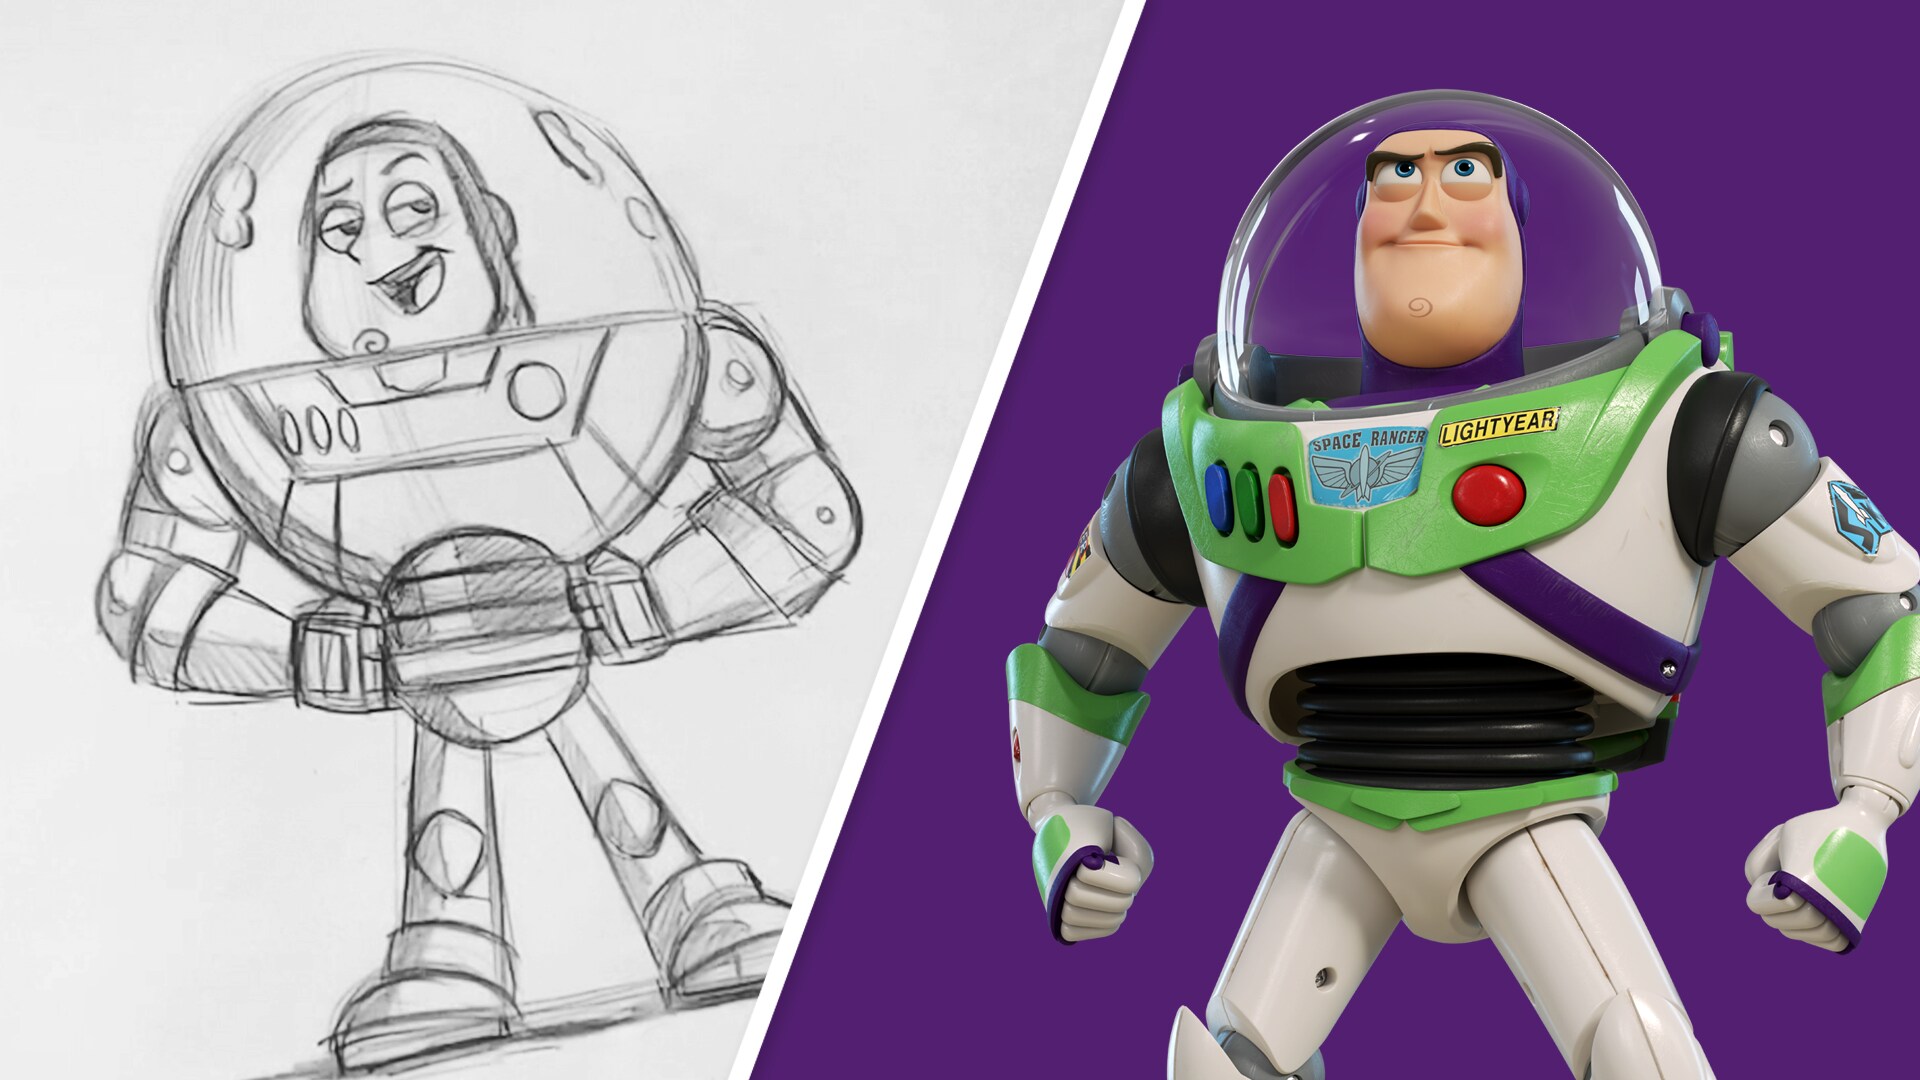 Learn to Draw Toy Story's Buzz Lightyear! | Disney News